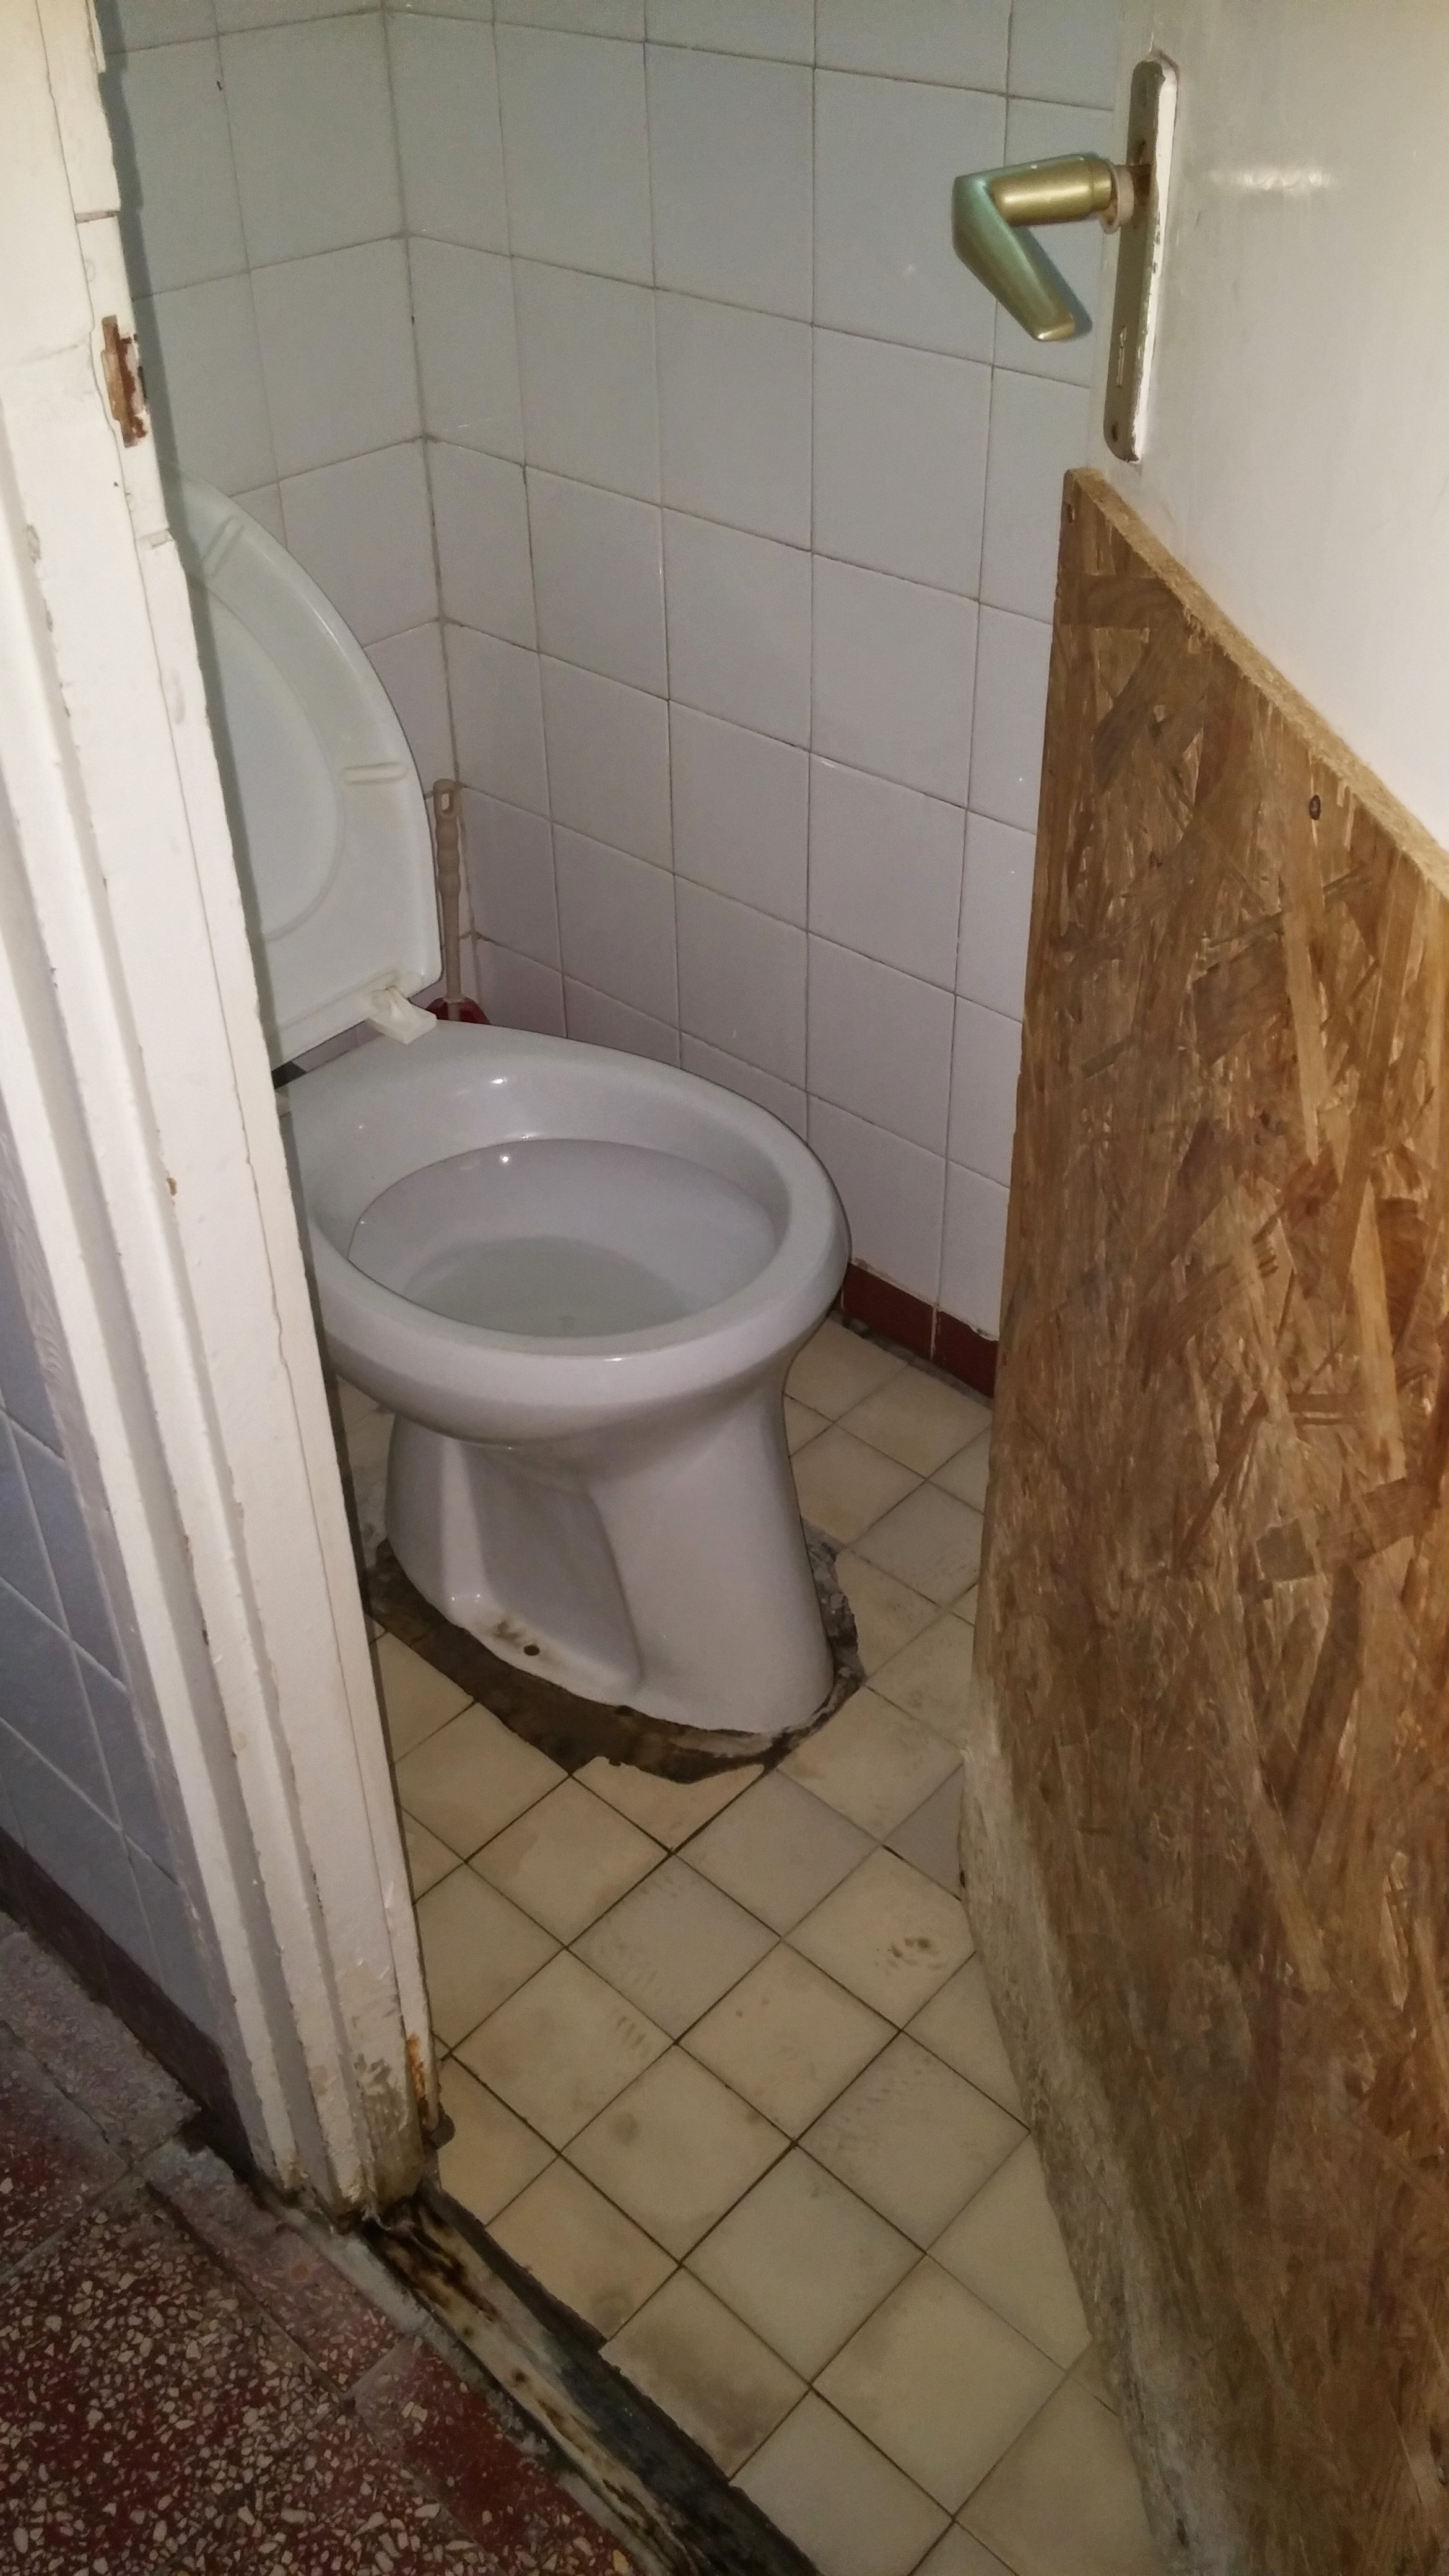 Nézegessetek magyar iskolai mosdókat - felújítás előtt és után